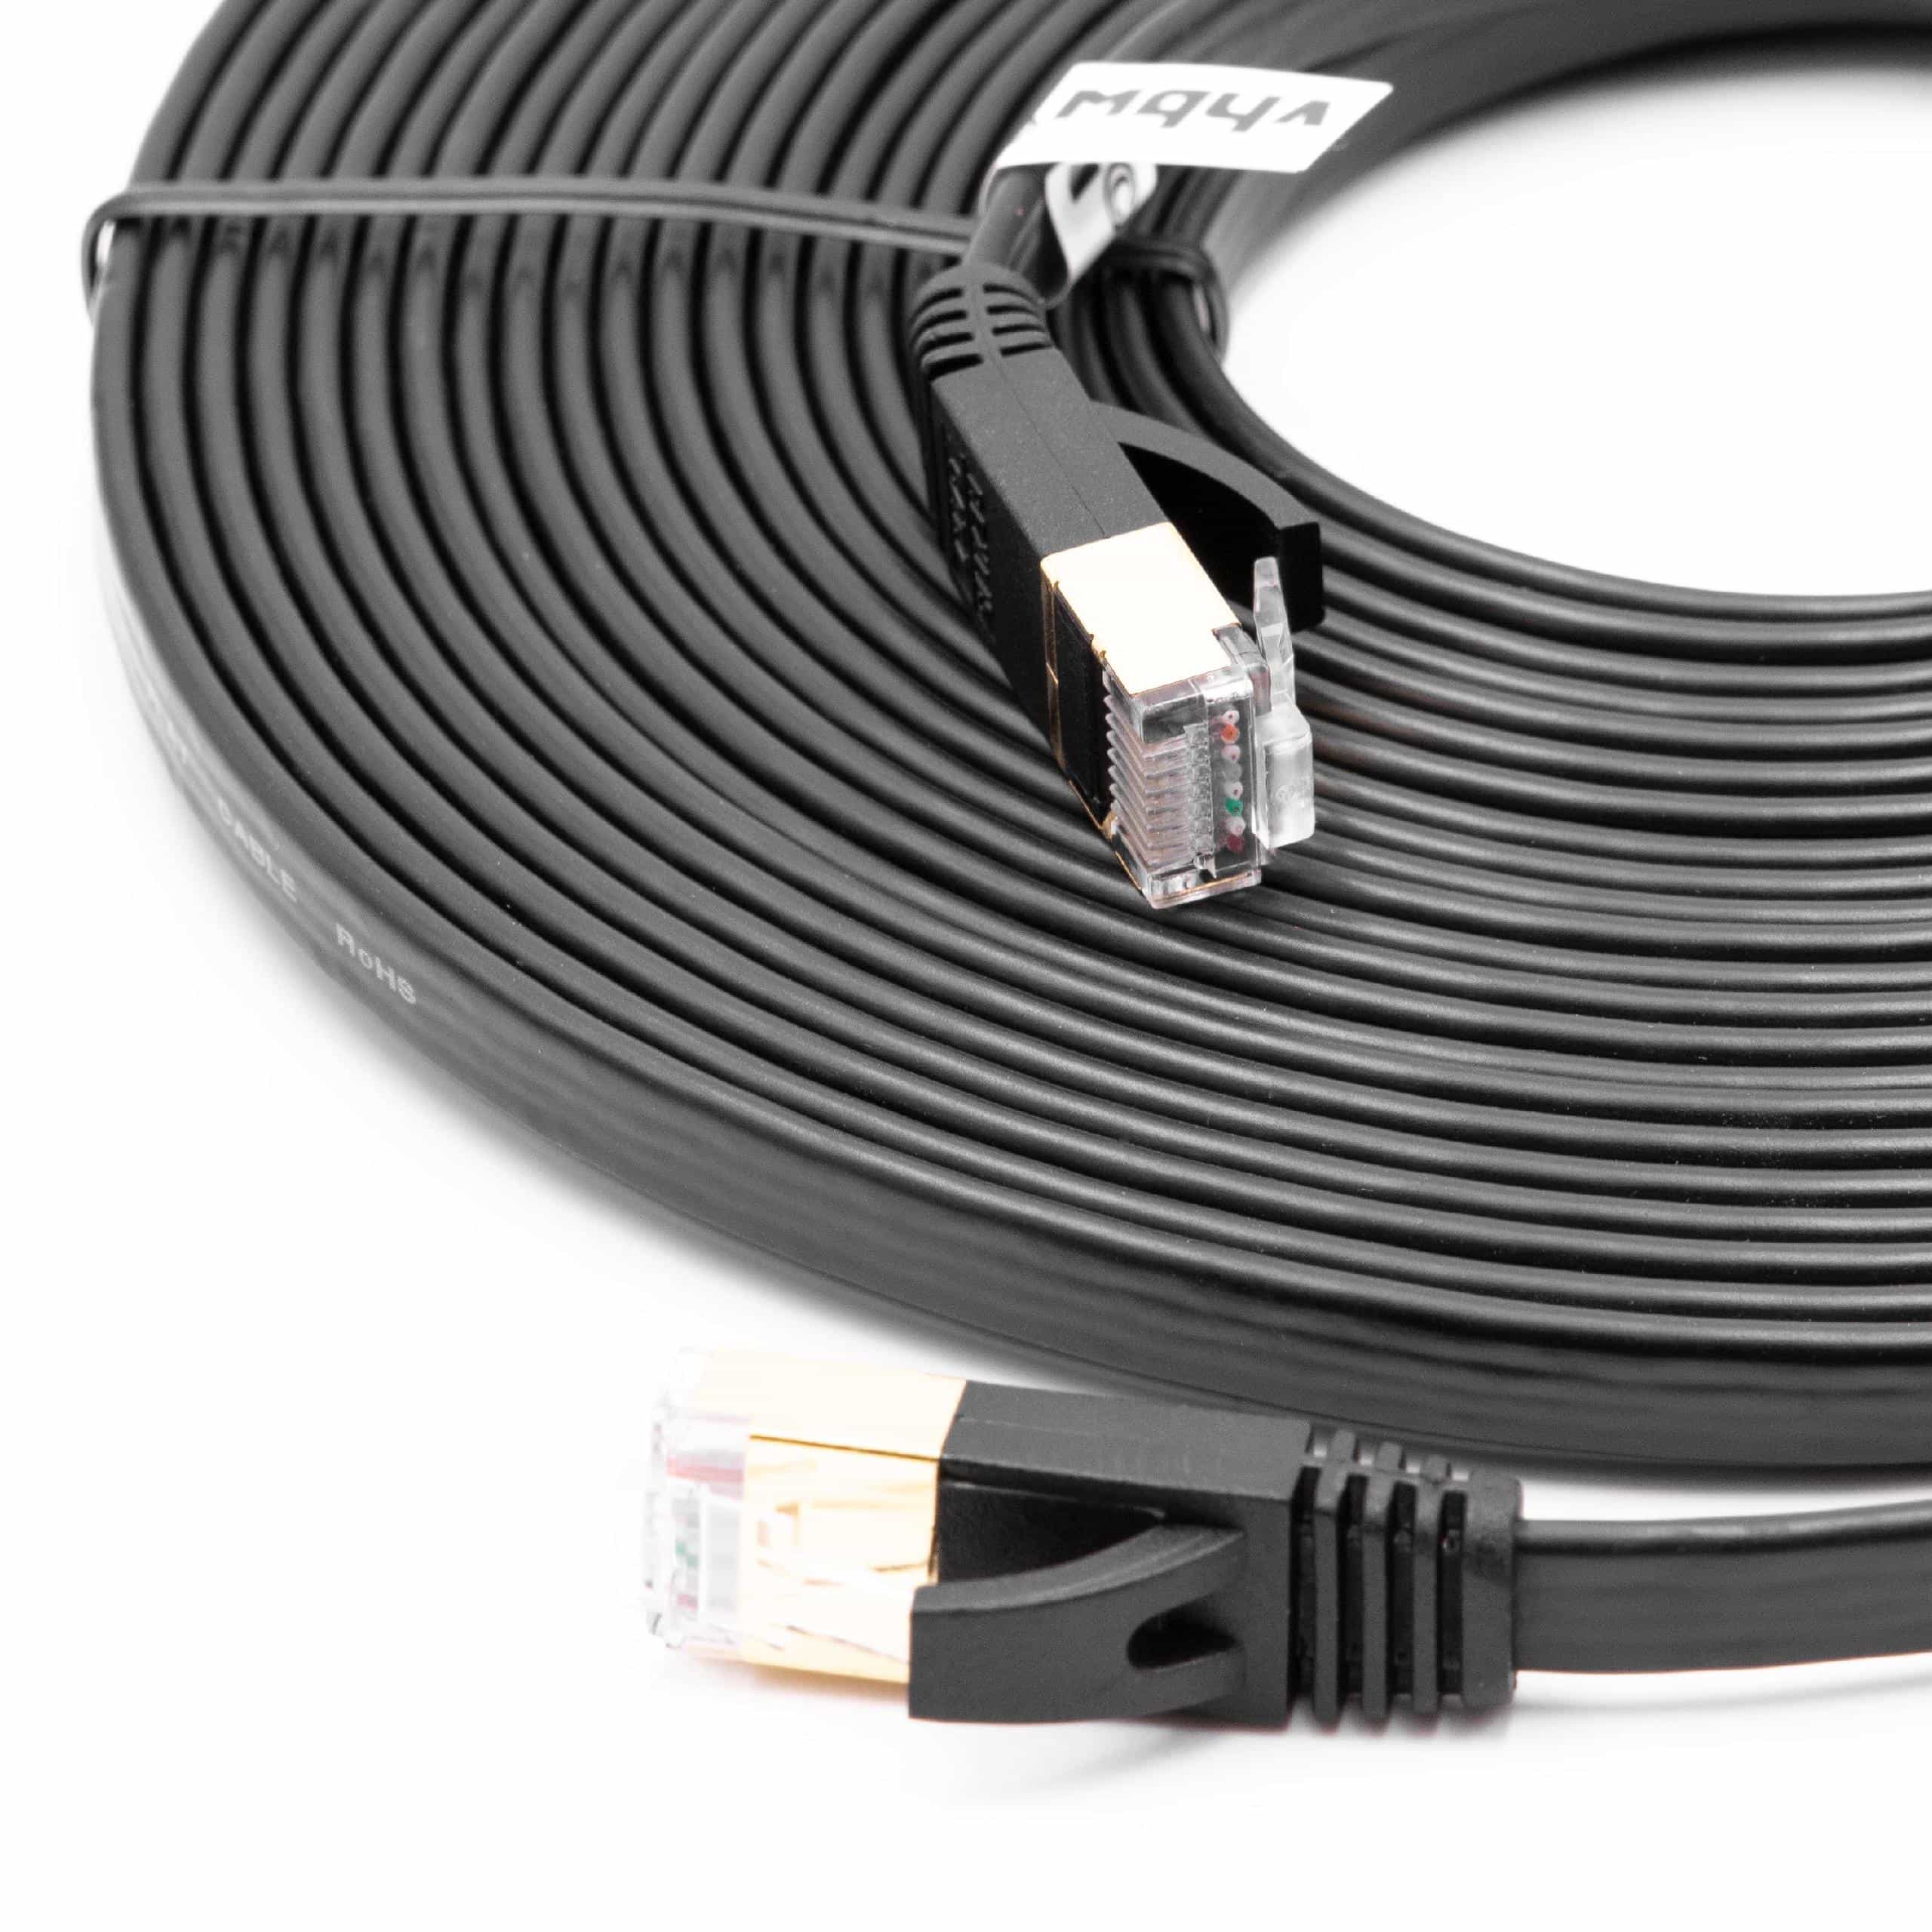 Ethernet LAN Patch Gigabit Network Cable CAT.7 8m black flat design, Internet Modem Cable